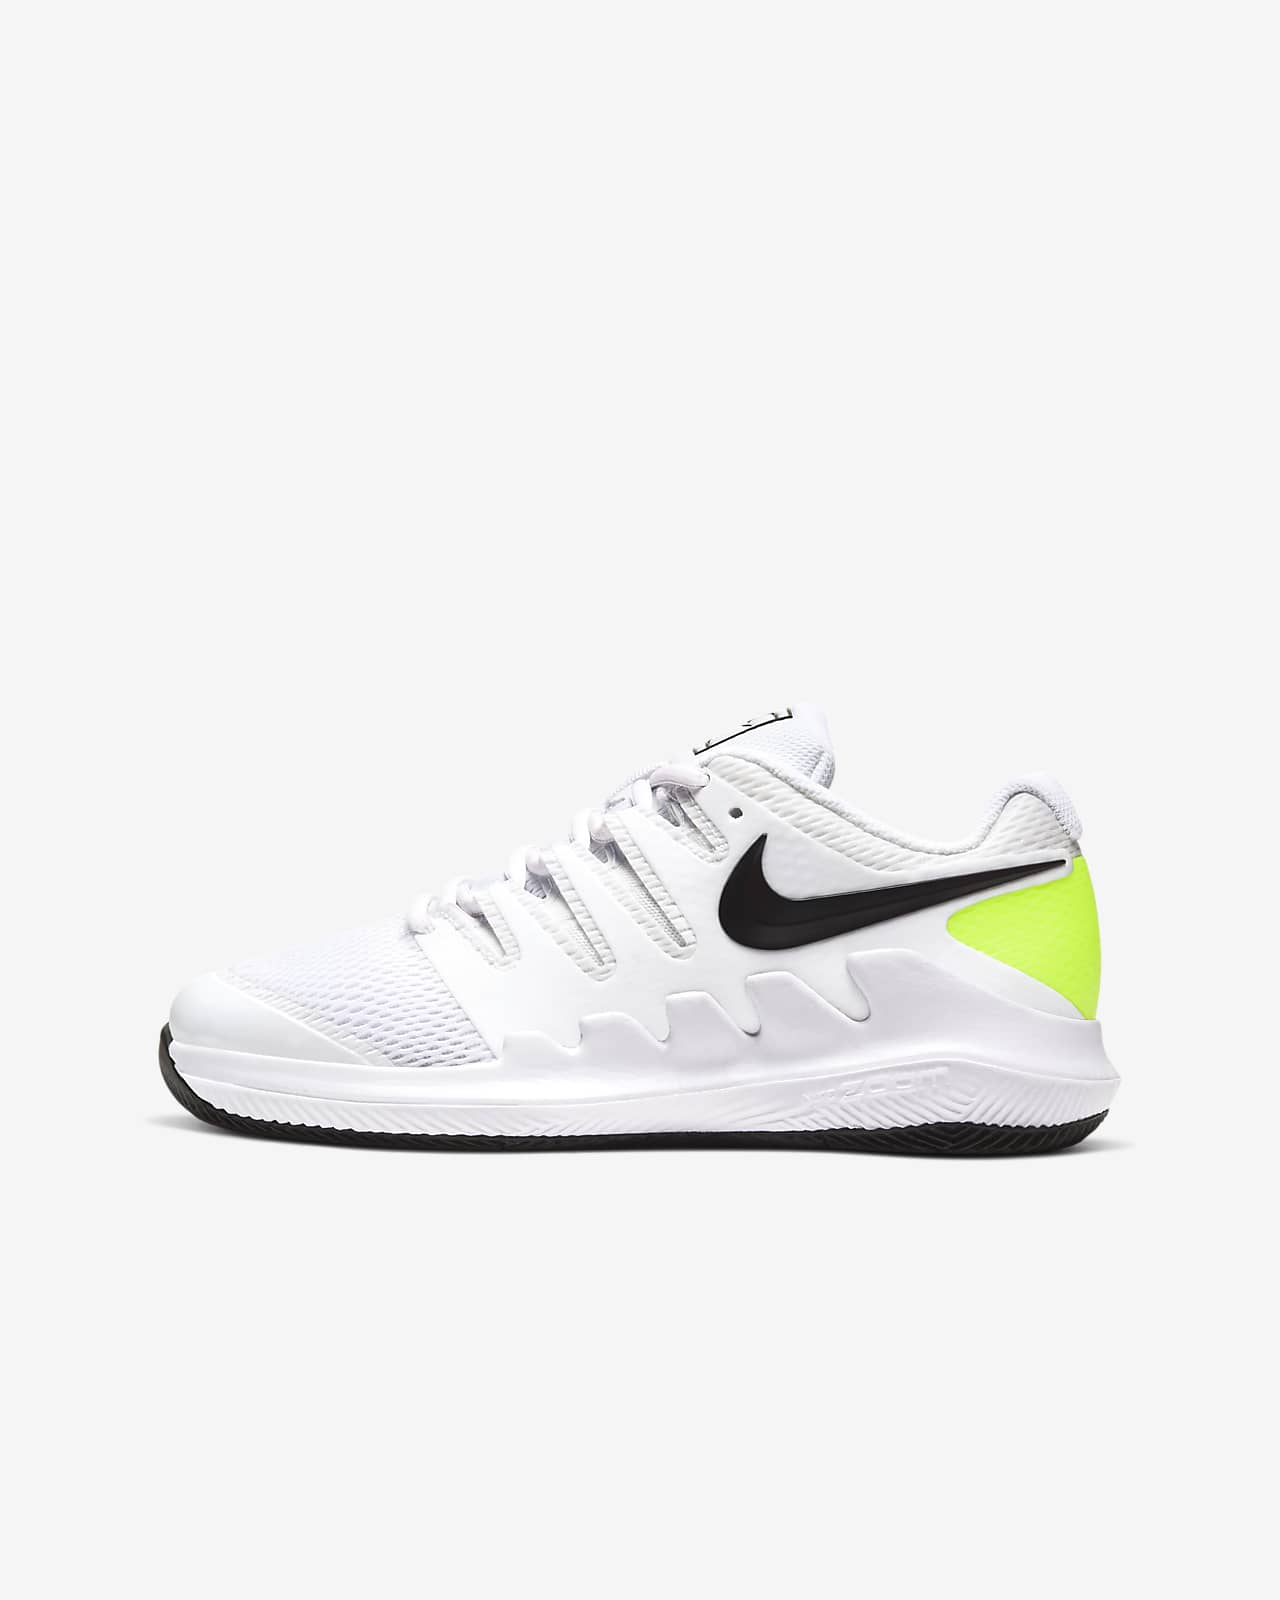 buy nike tennis shoes online